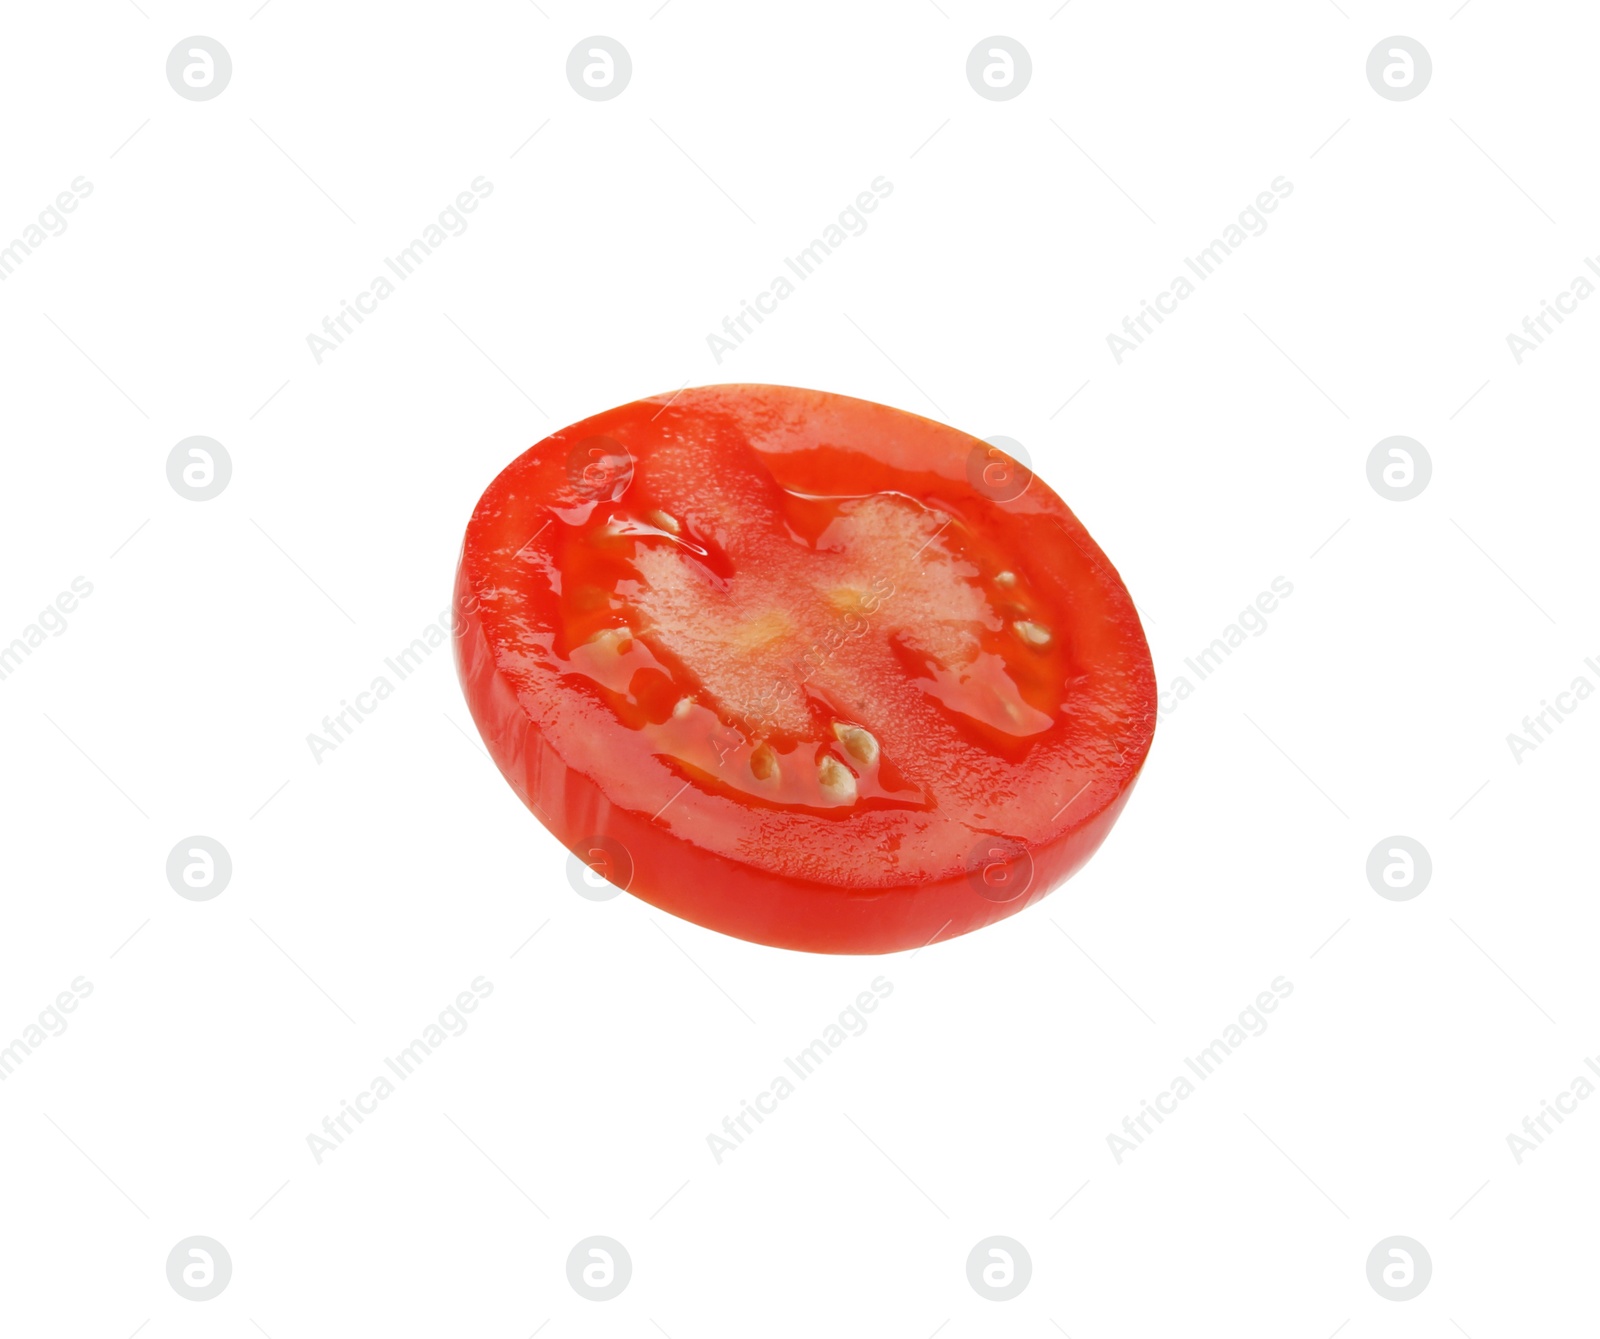 Photo of Slicetasty tomato isolated on white